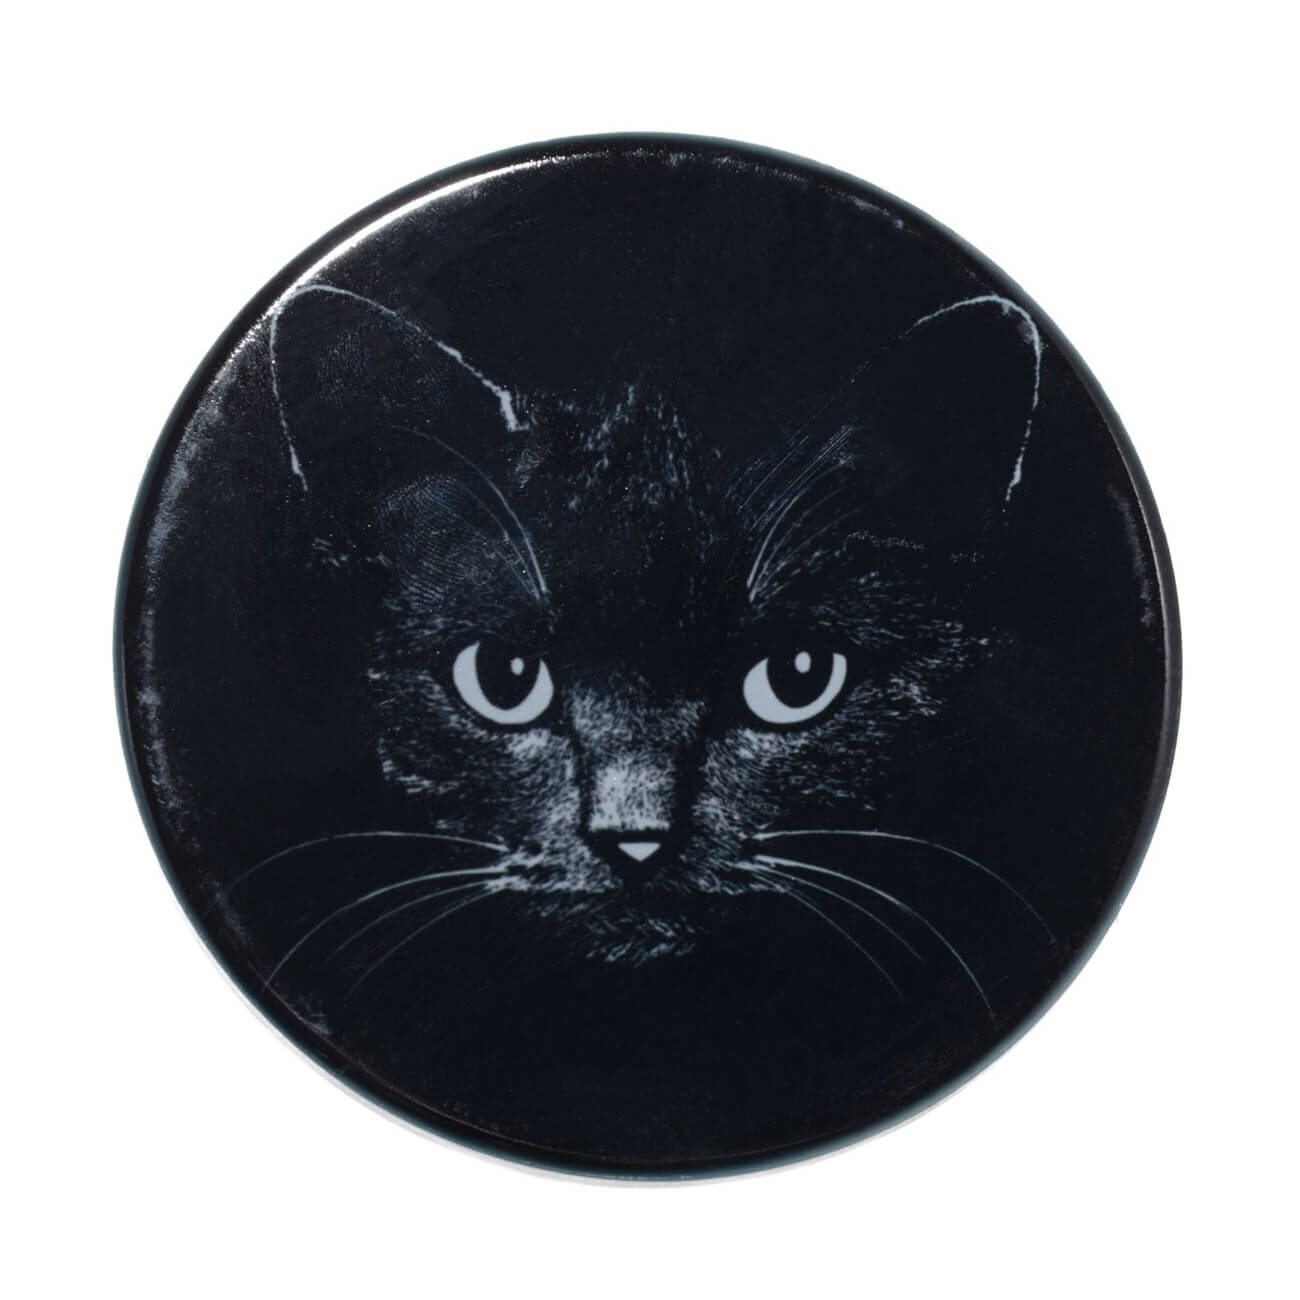 Подставка под кружку, 11x11 см, керамика/пробка, круглая, черная, Ночной кот, Cat night подставка для яиц